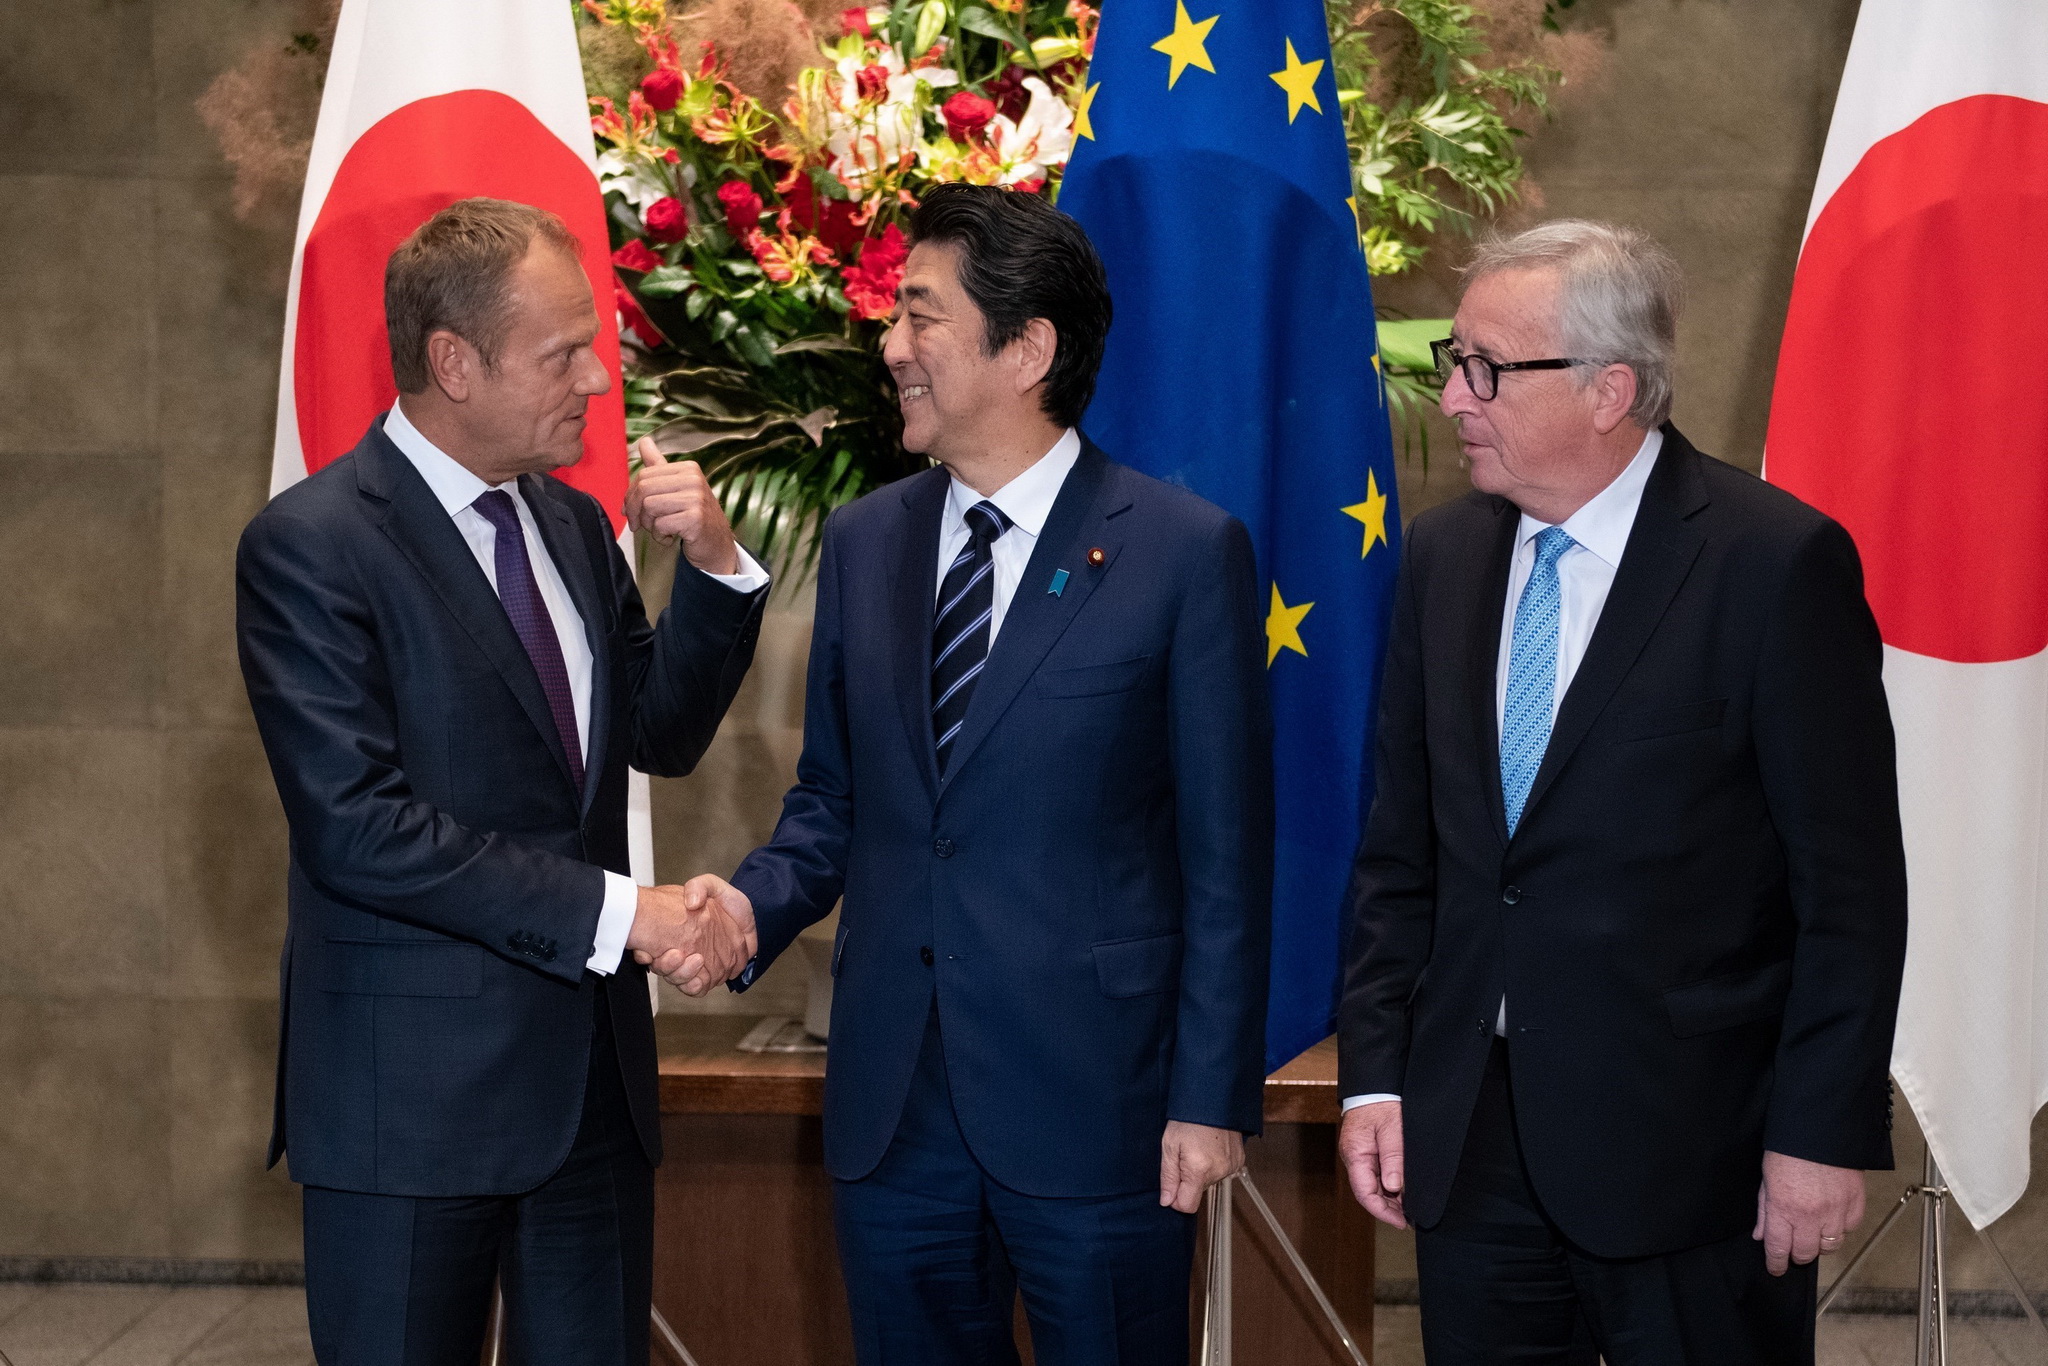 Thủ tướng Nhật Bản Shinzo Abe (giữa), Chủ tịch Ủy ban châu Âu (EC) Jean-Claude Juncker (phải) và Chủ tịch Hội đồng châu Âu Donald Tusk (trái) tại cuộc gặp ở thủ đô Tokyo ngày 17/7. (Ảnh: AFP/TTXVN)